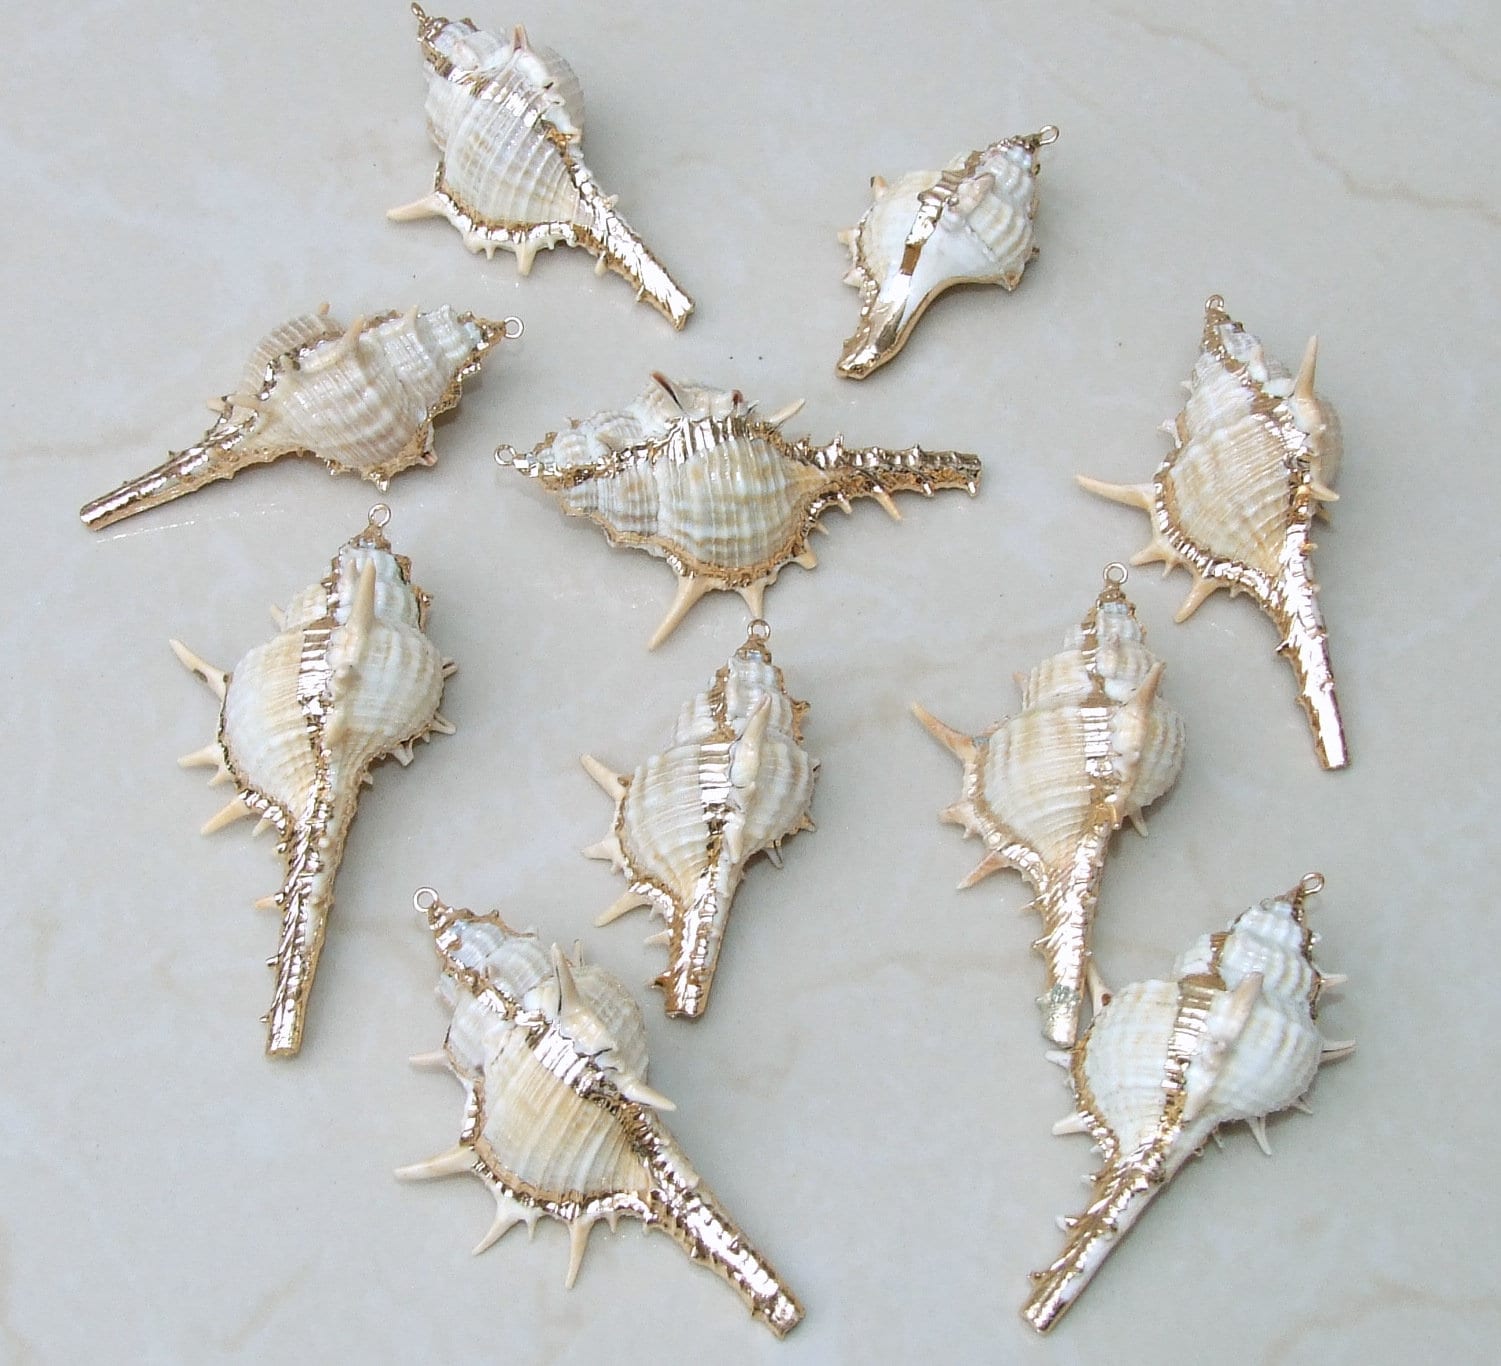 Natural Sea Shell Beads Jewelry Making Shells Strand Beautiful